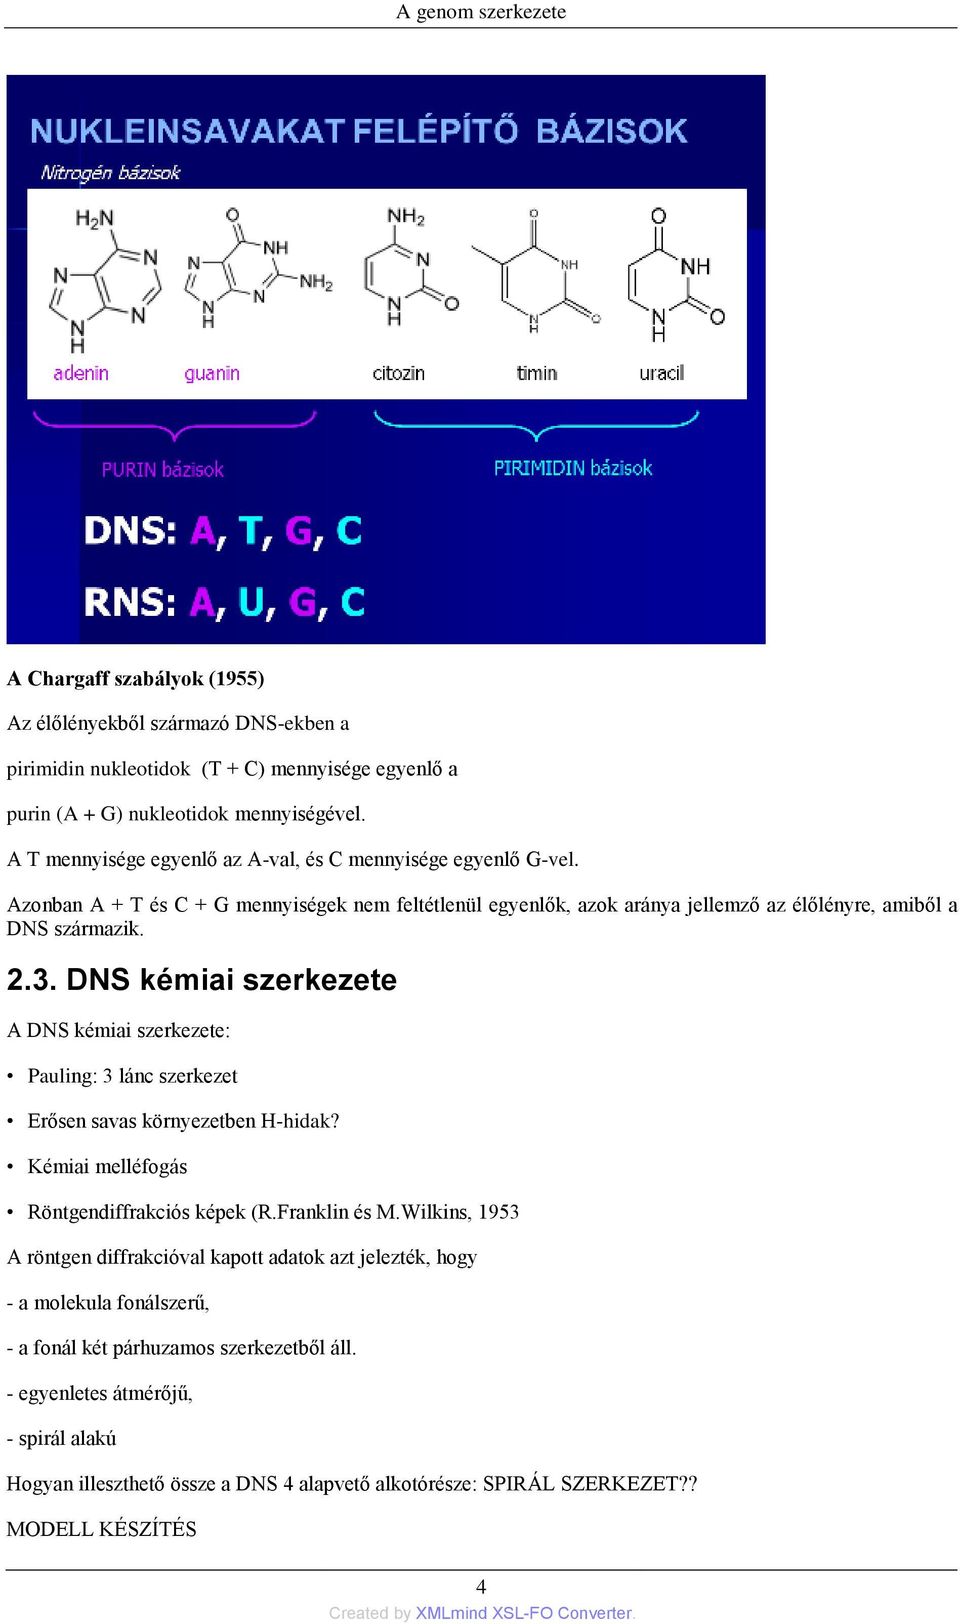 DNS kémiai szerkezete A DNS kémiai szerkezete: Pauling: 3 lánc szerkezet Erősen savas környezetben H-hidak? Kémiai melléfogás Röntgendiffrakciós képek (R.Franklin és M.